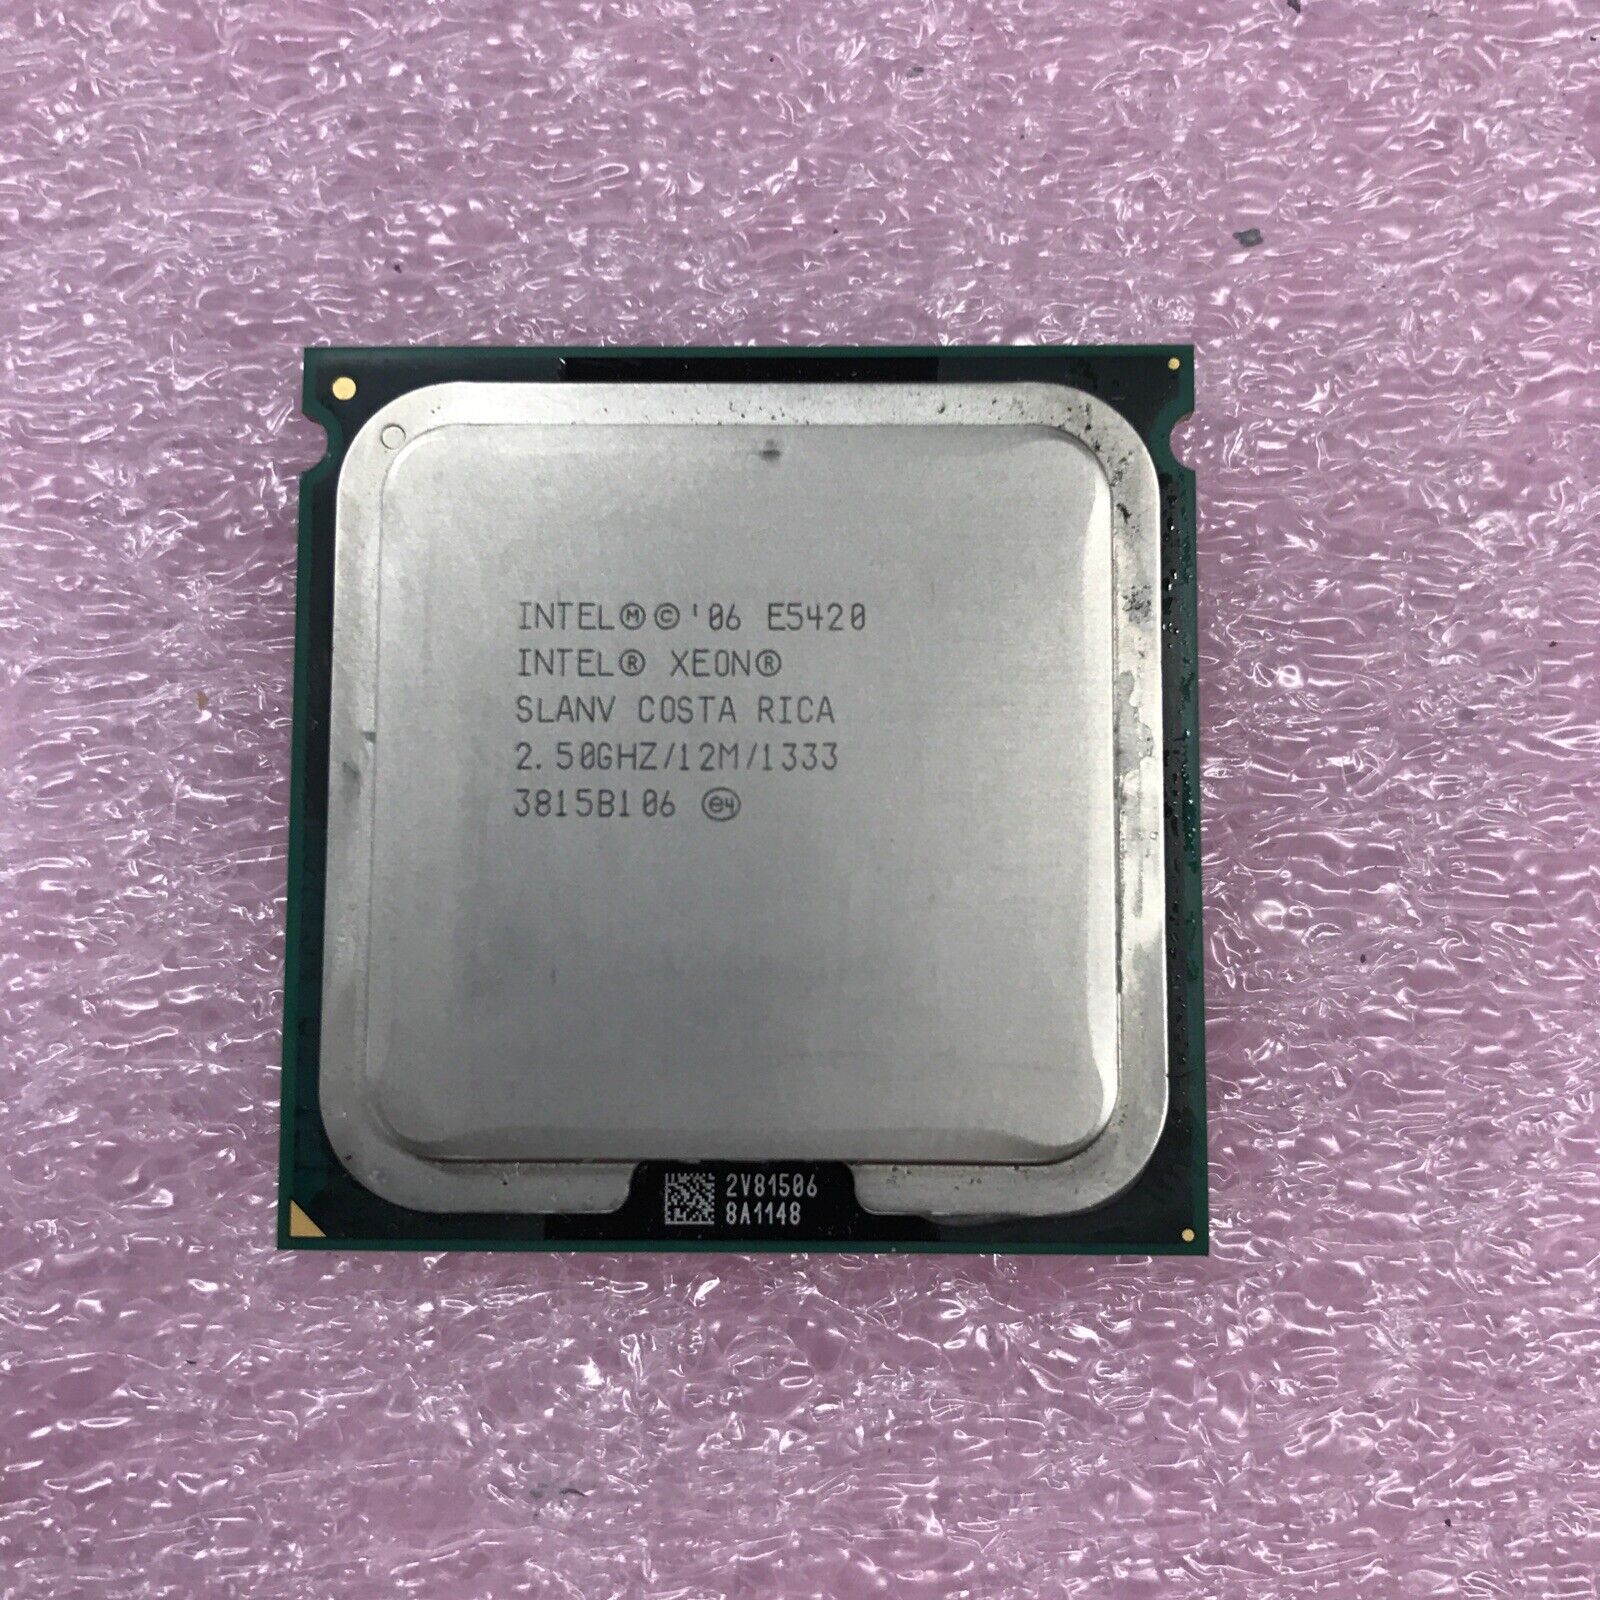 Lot of 2 Intel SLANV Xeon E5420 2.5 GHz LGA 771 Desktop CPU